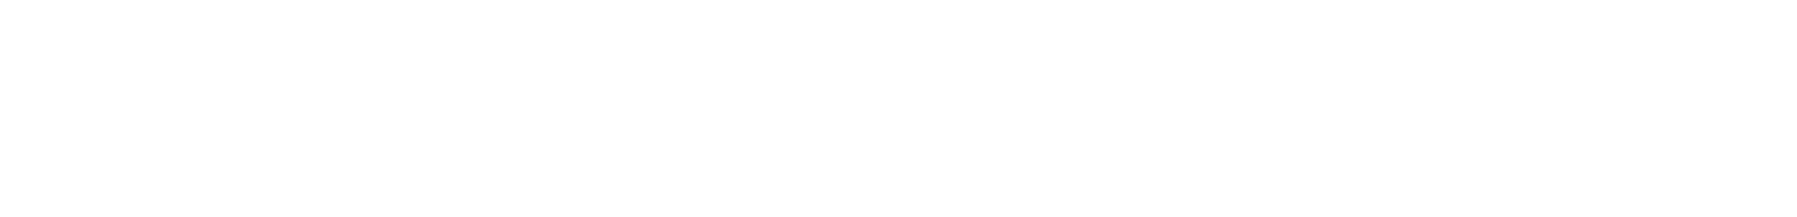 TF-white-logo